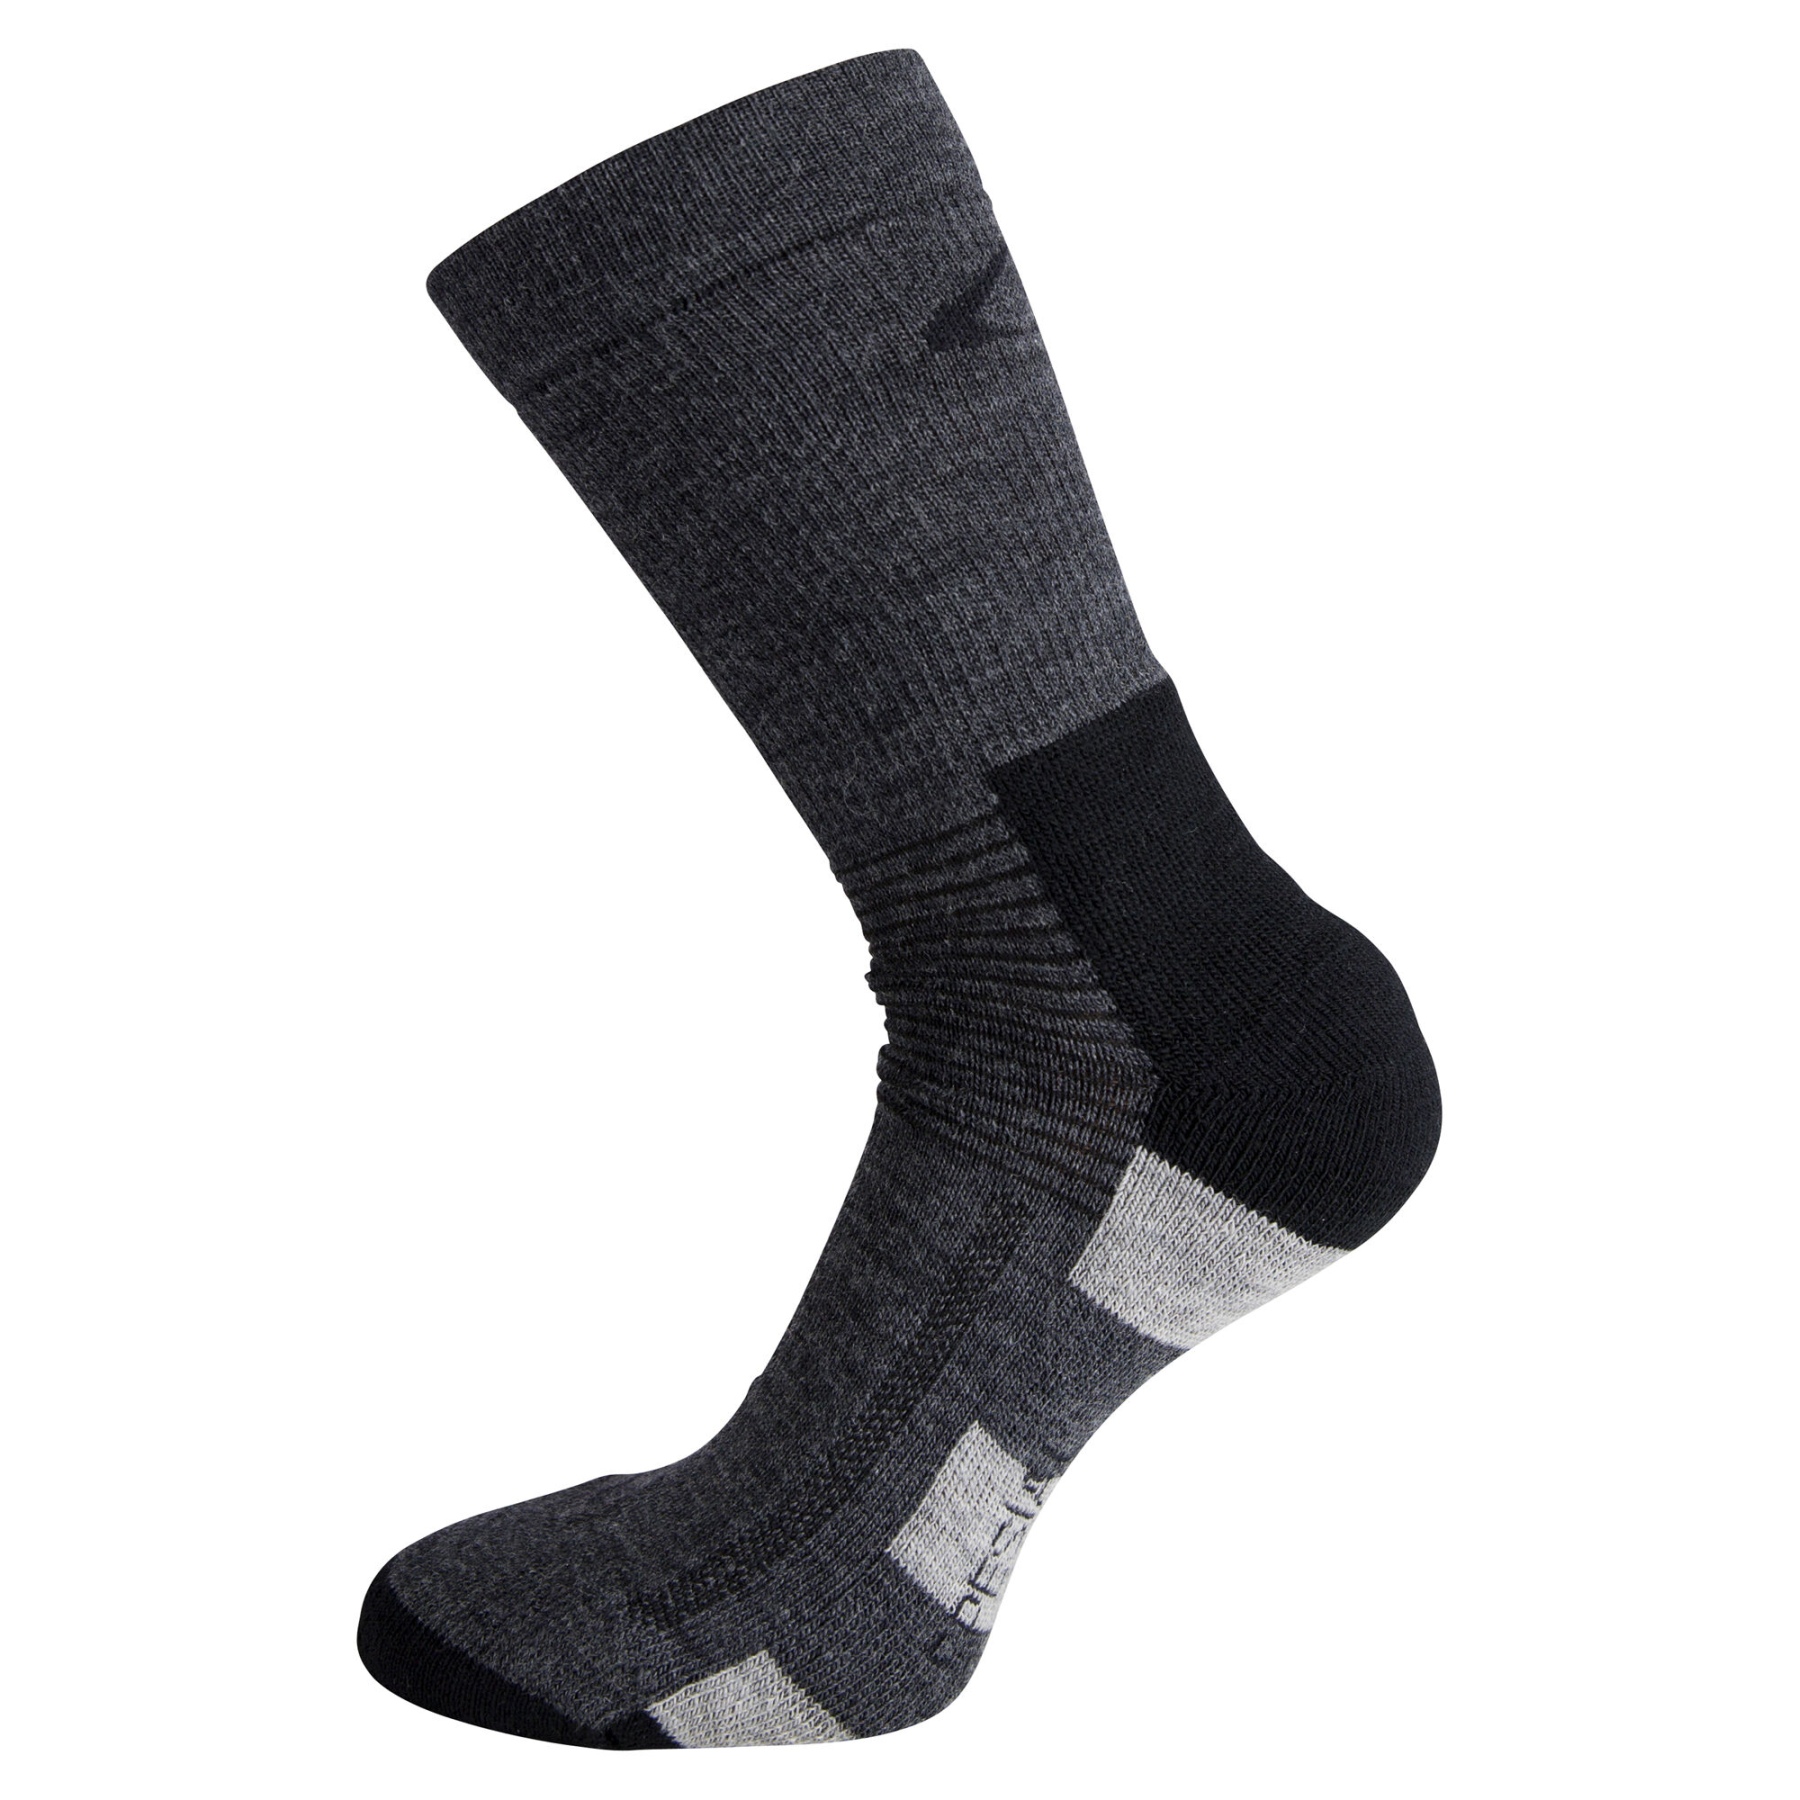 Produktbild von Ulvang Spesial Socke - Charcoal Melange/Black Multistripe